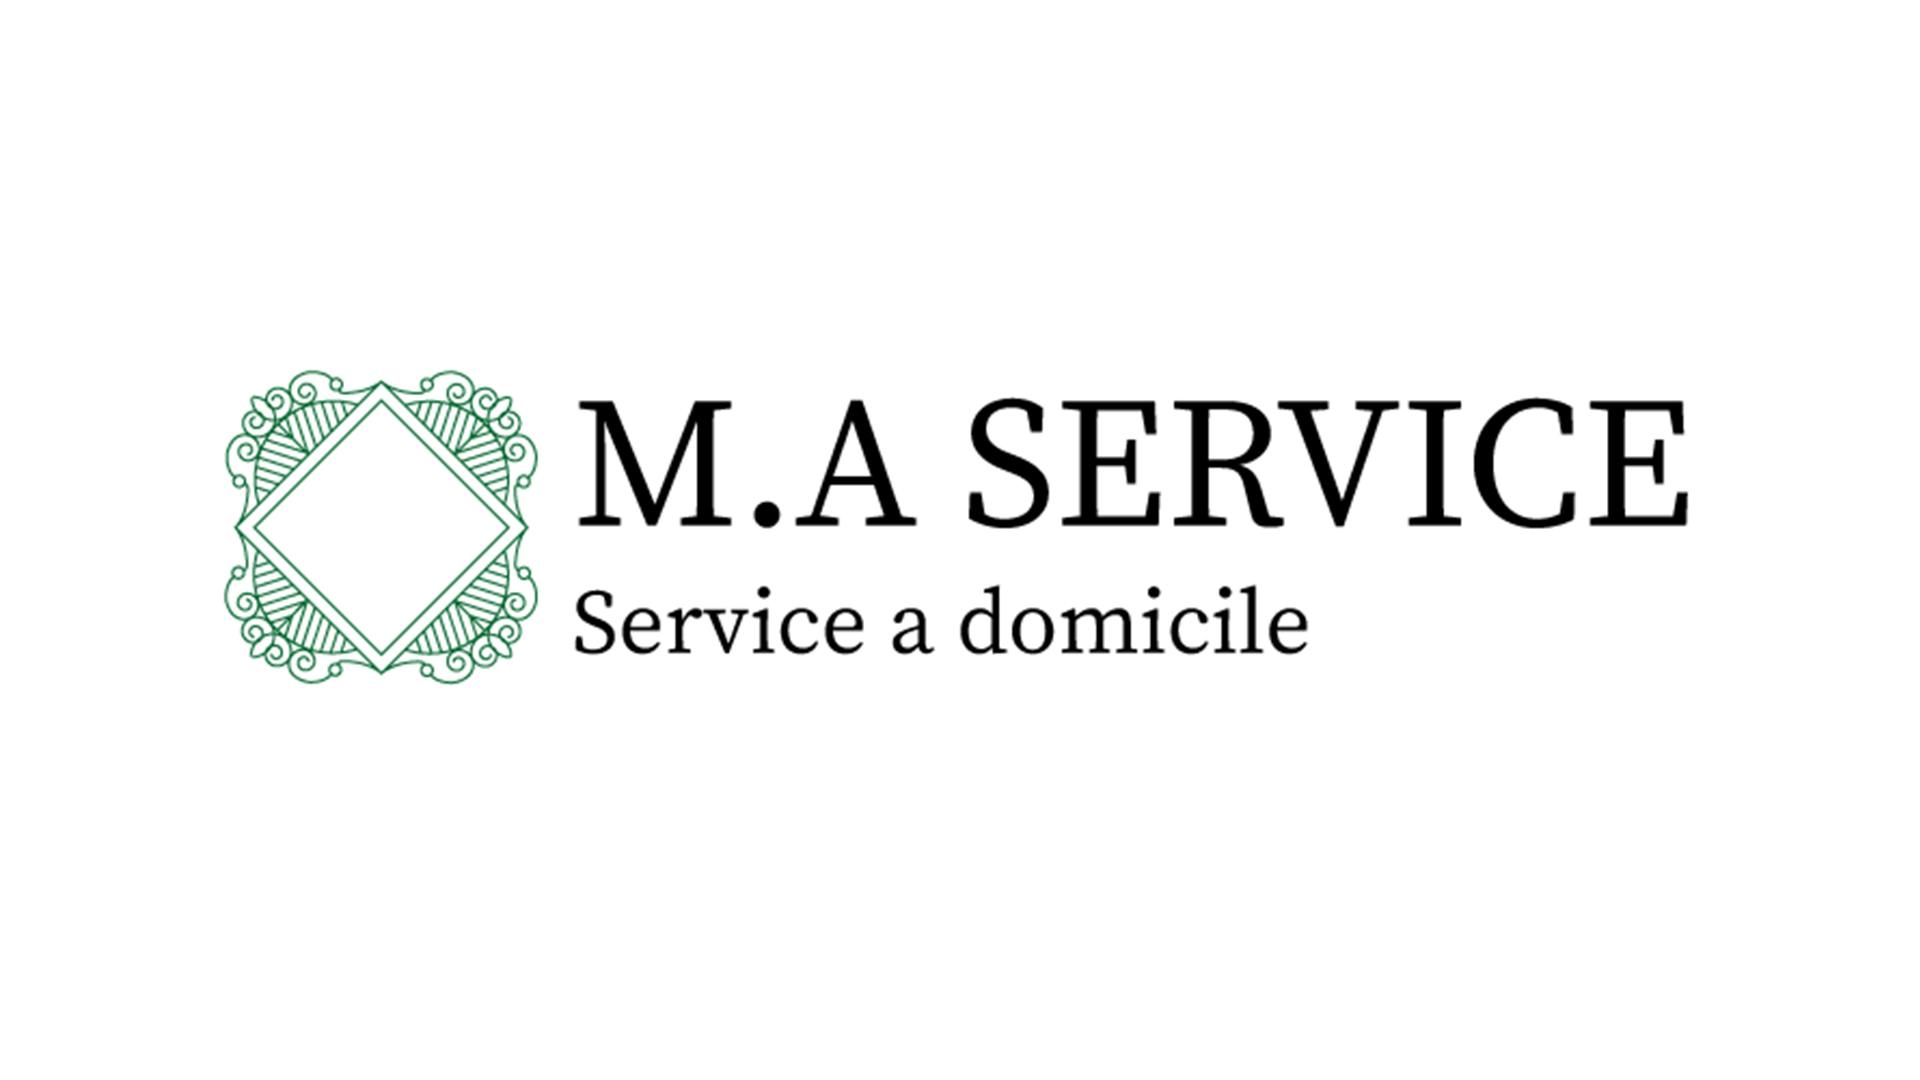 M.A SERVICES